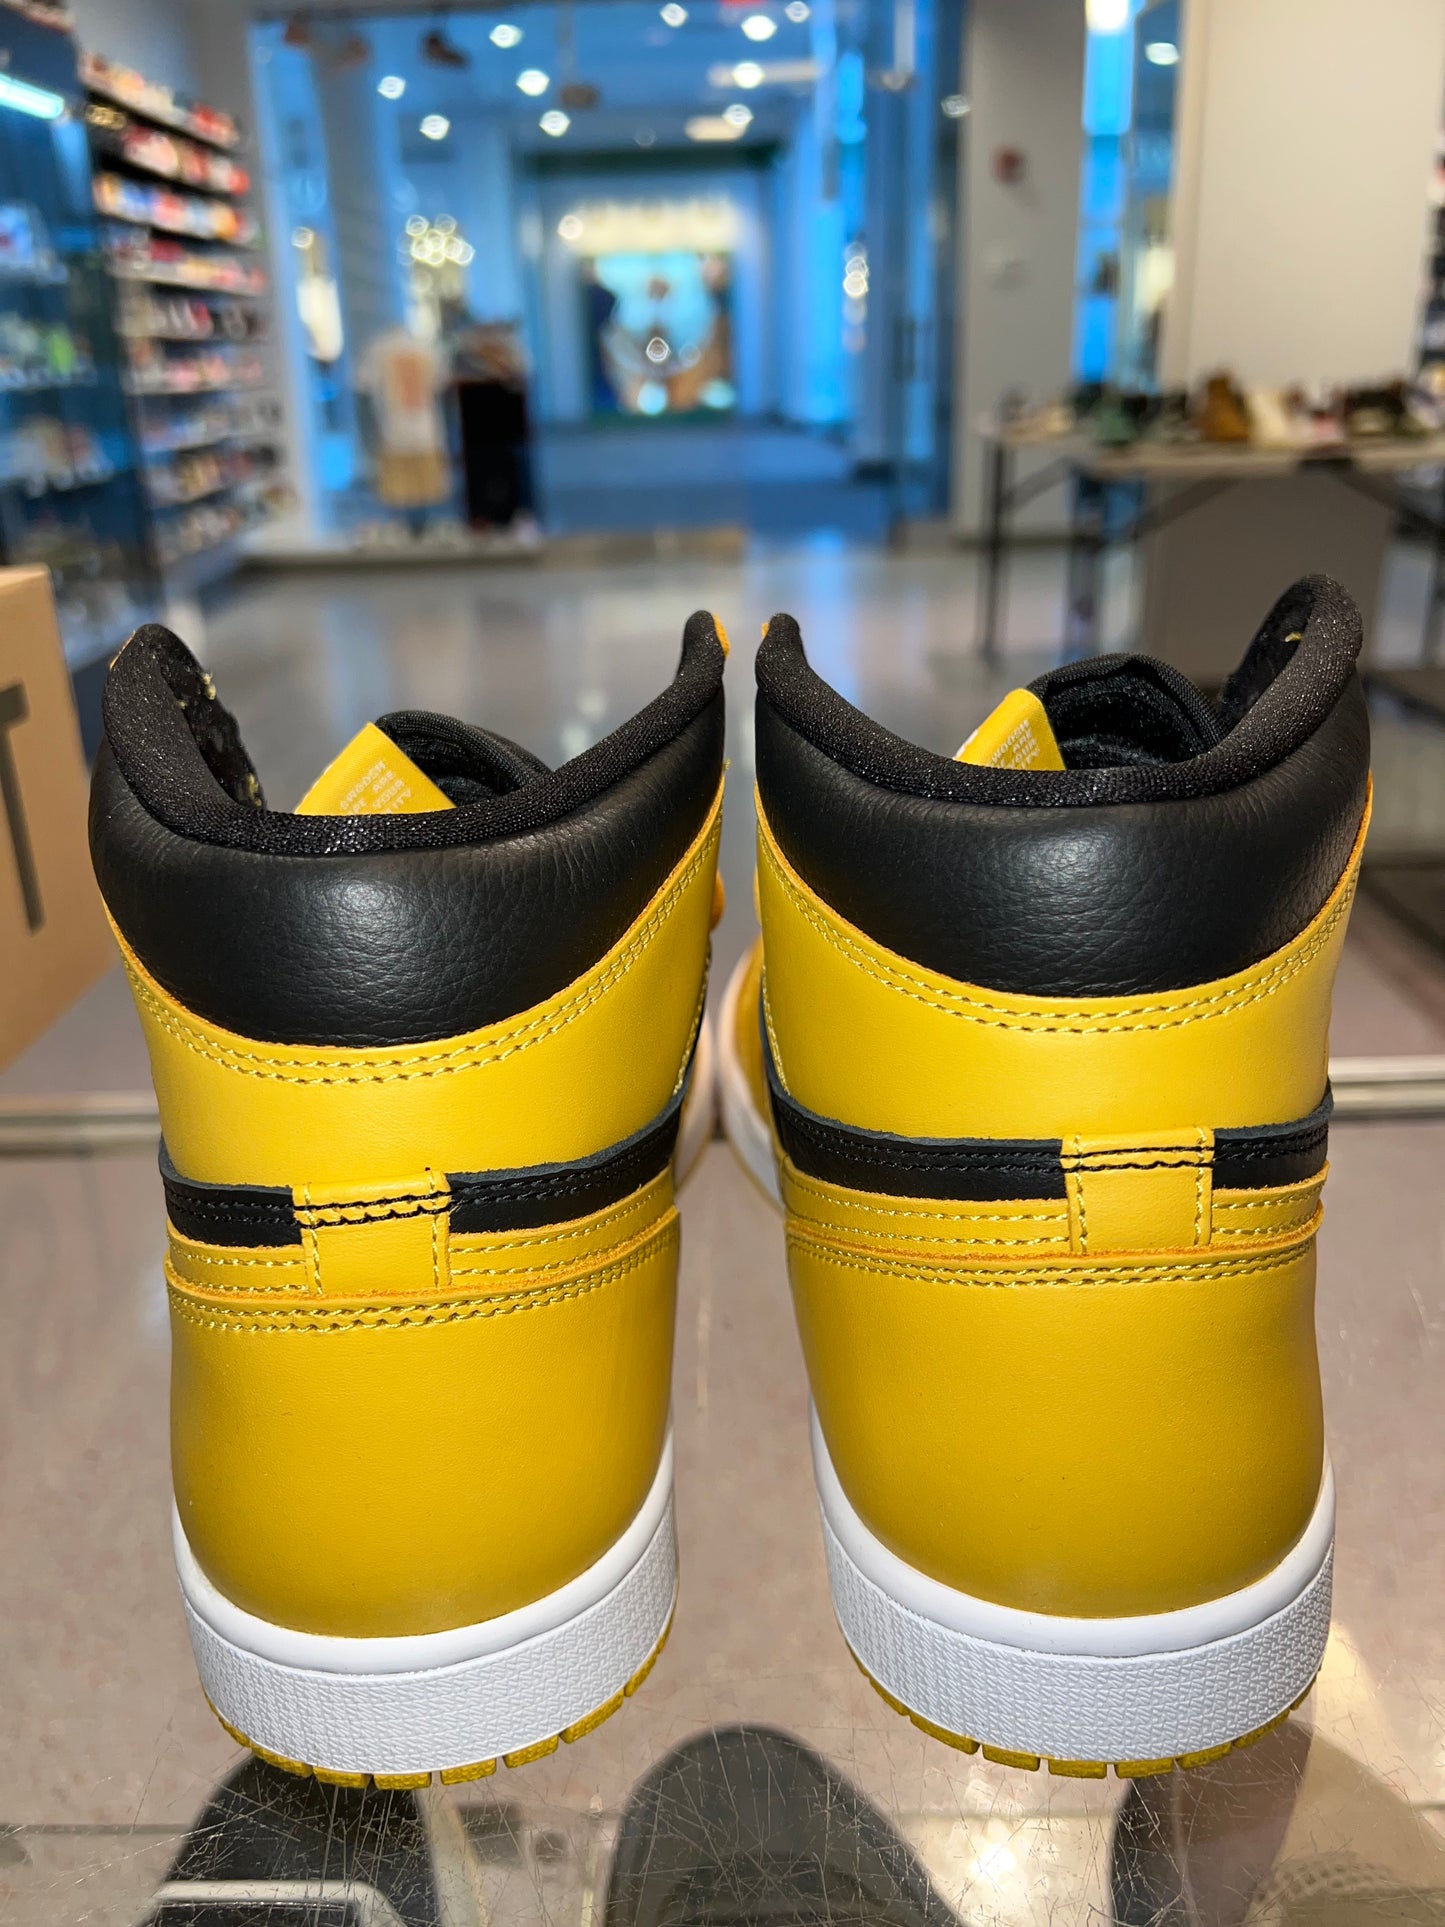 Size 10 Air Jordan 1 “Pollen” (Mall)